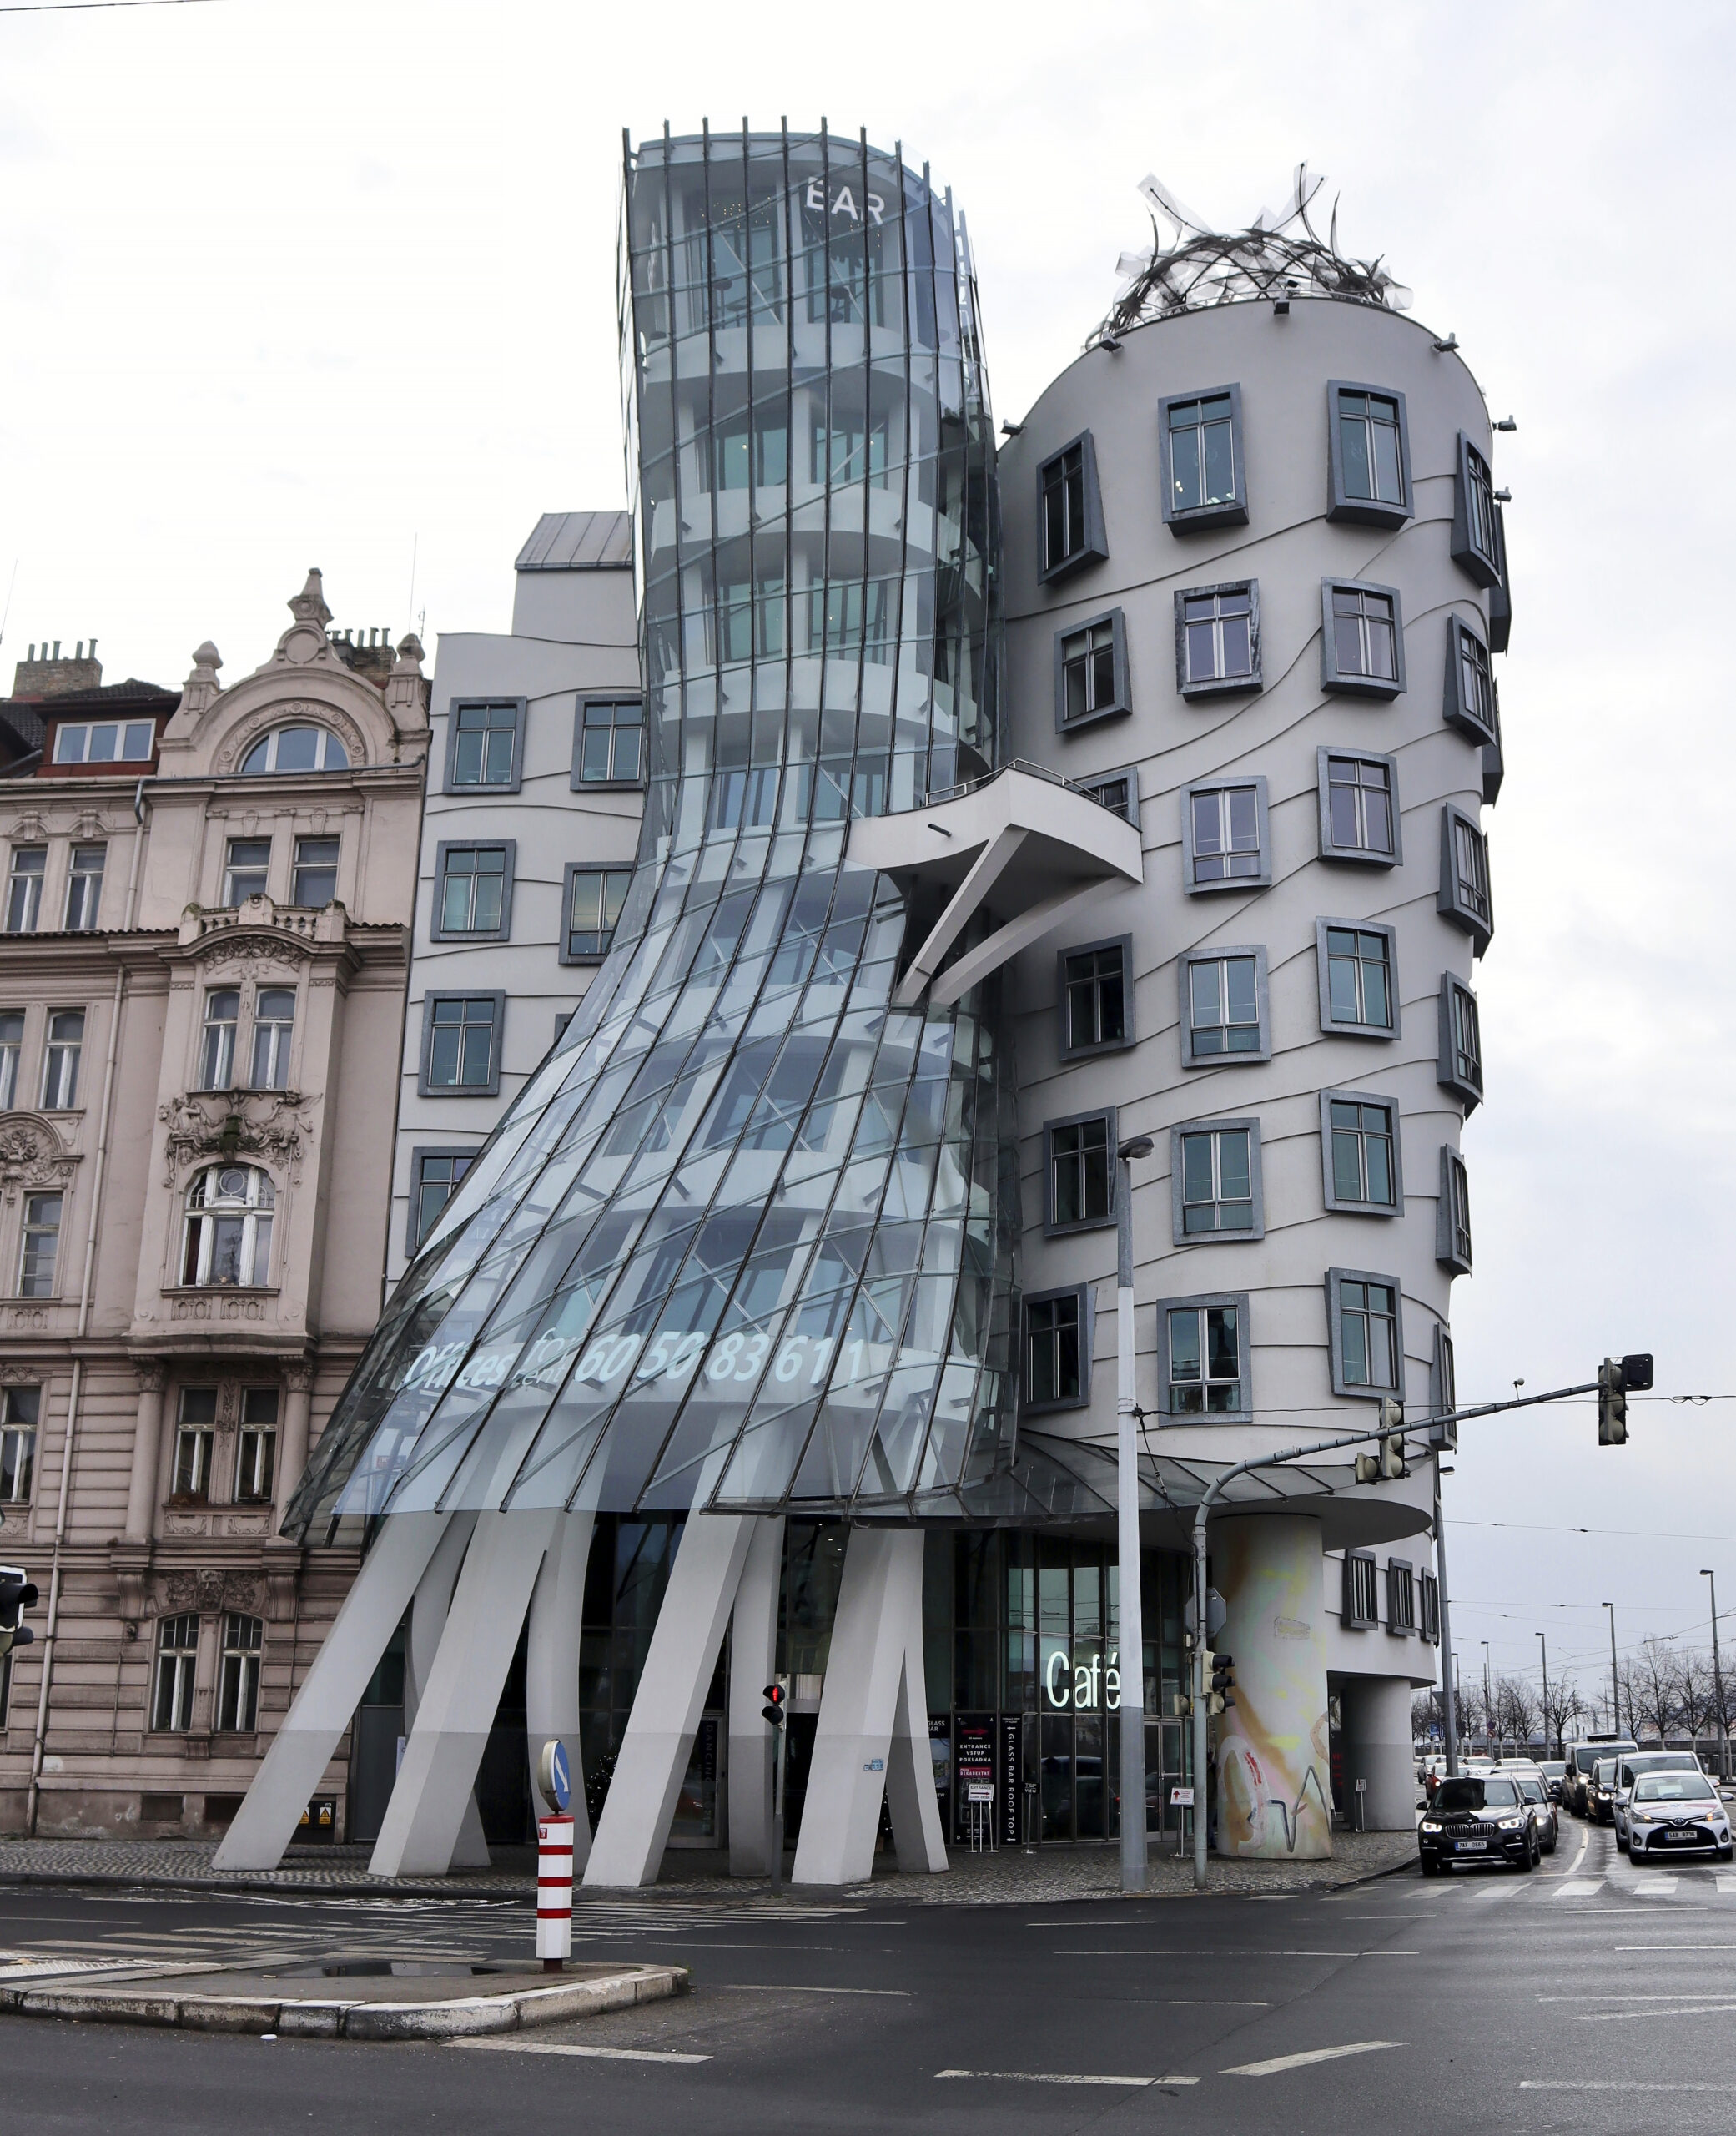 Vuonna 1996 valmistunut ”Tanssiva talo” on modernia arkkitehtuuria edustava nähtävyys Prahassa. Sen sisällä on baari ja ravintola. © Anneli Juutilainen